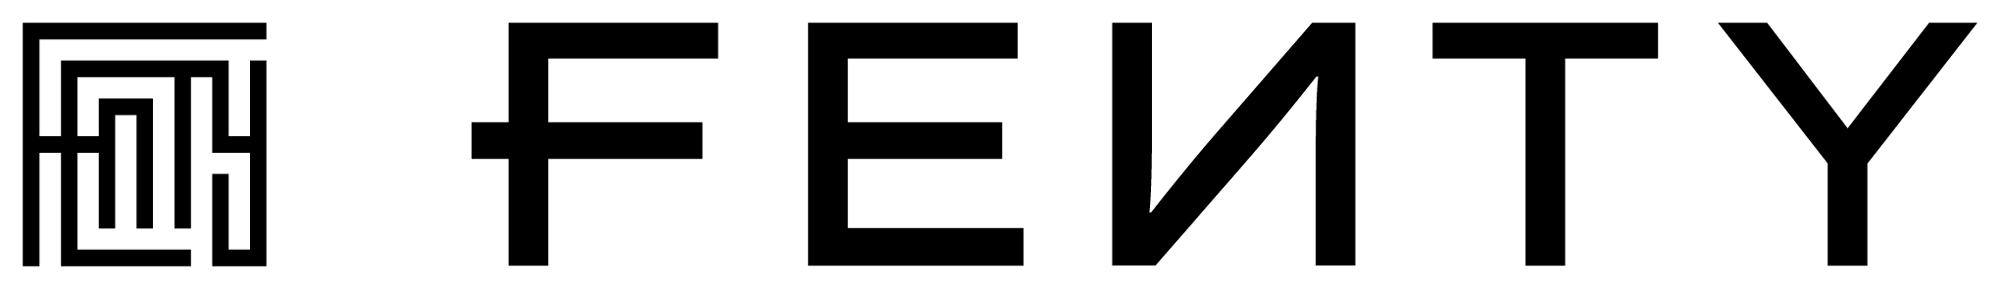 rihanna fenty logo